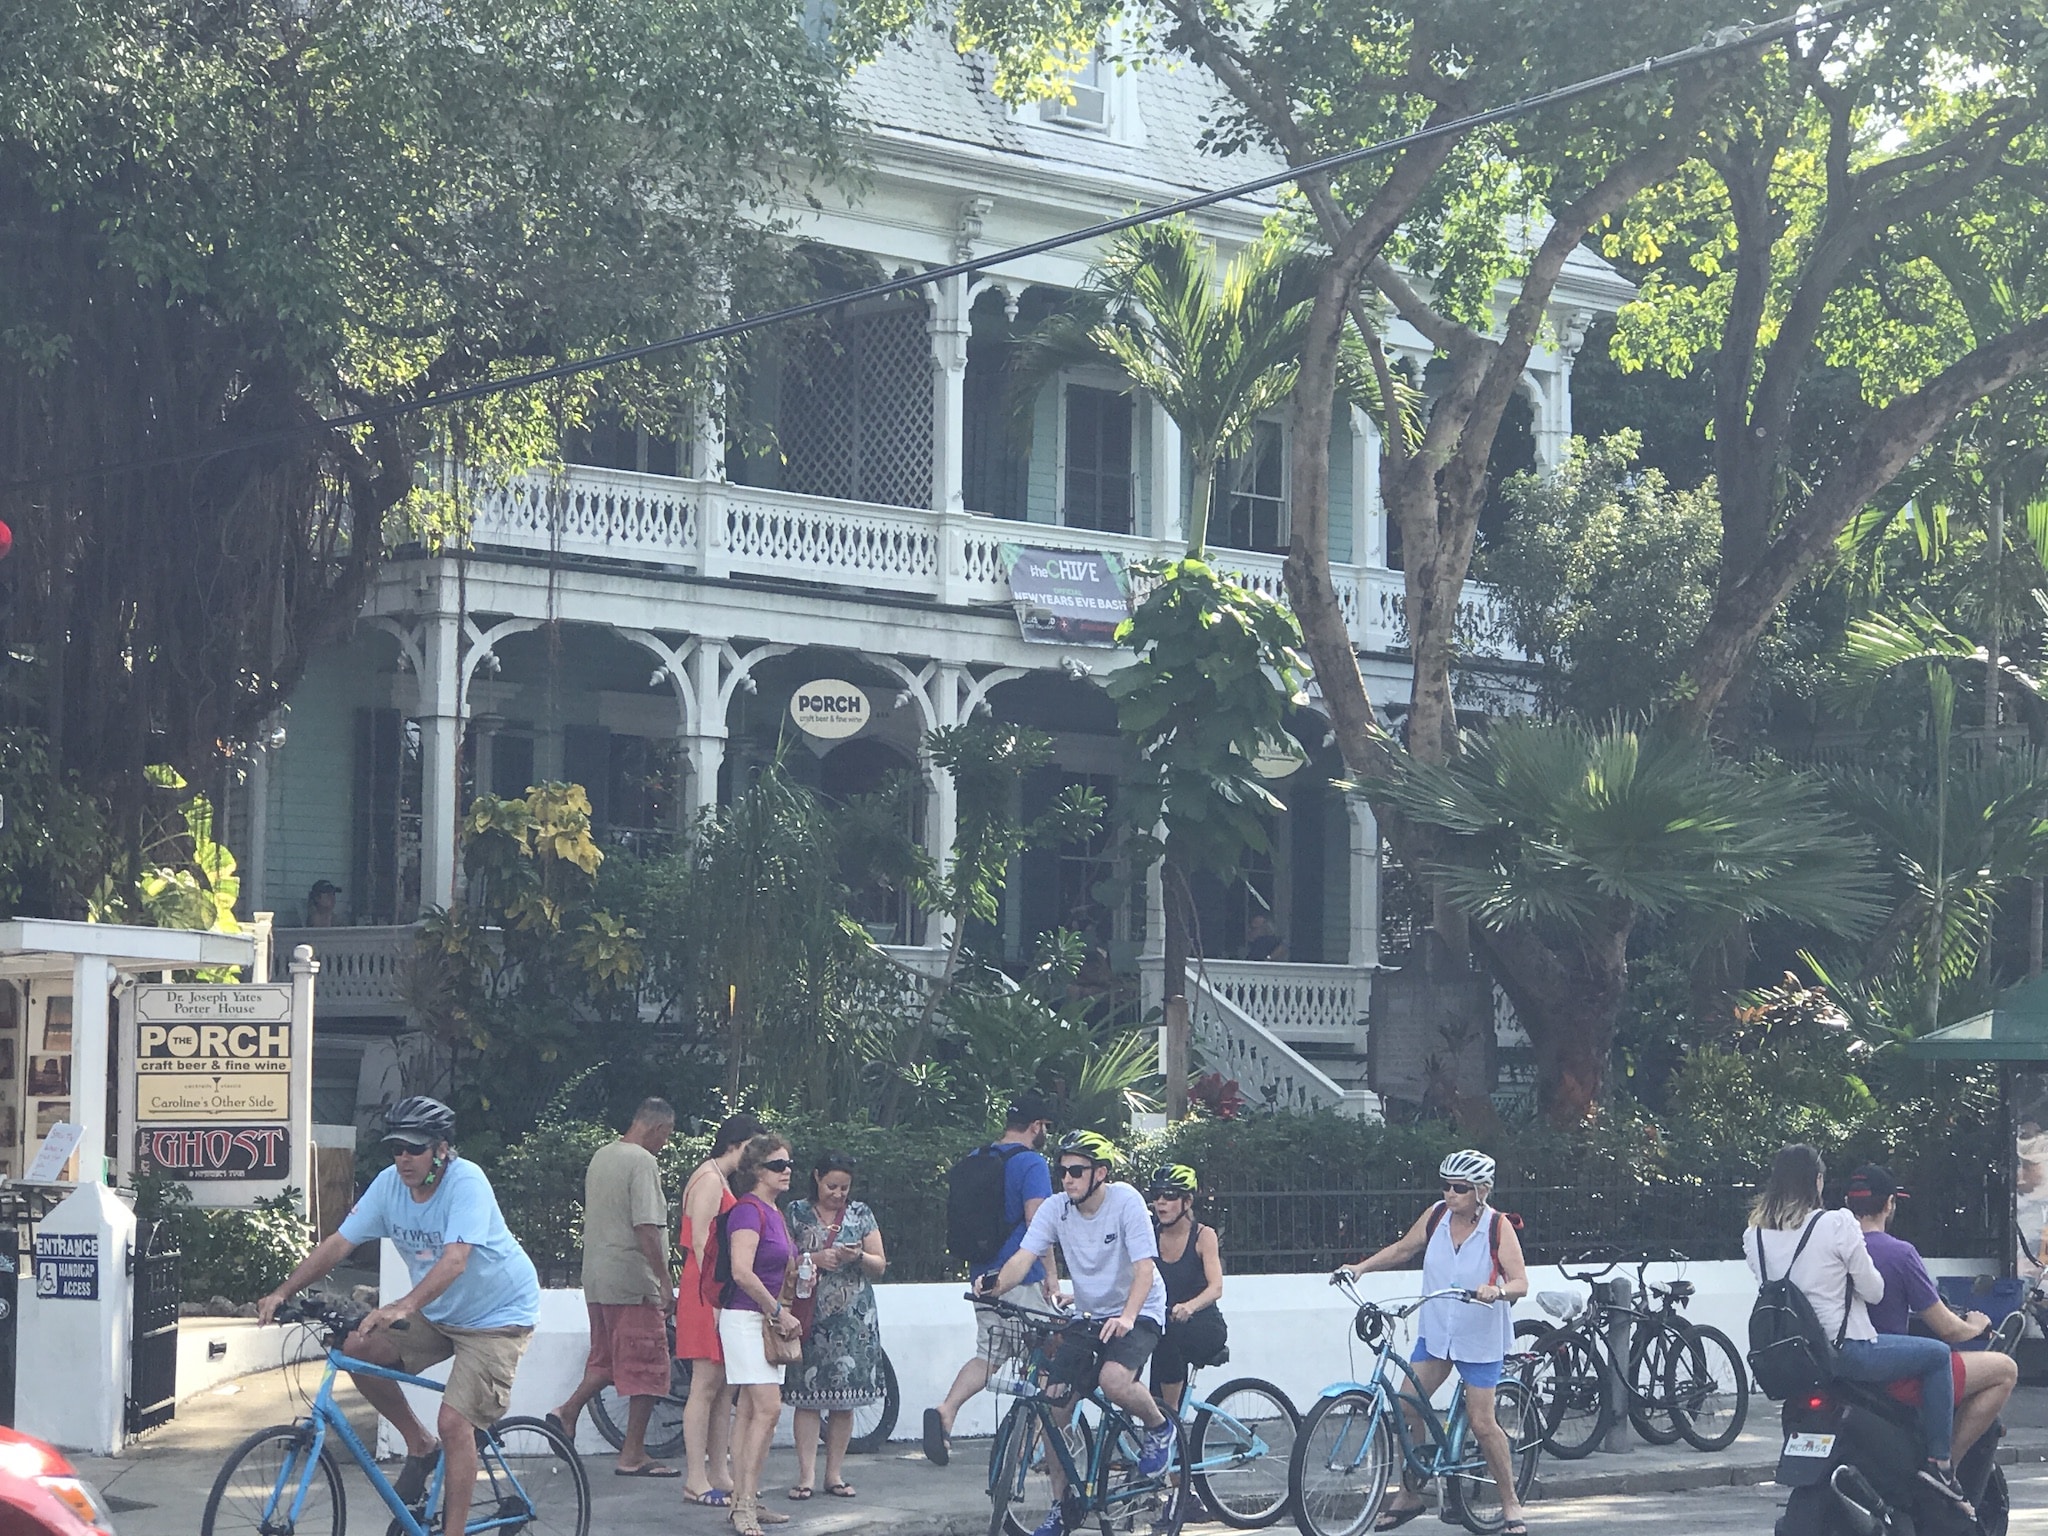 Insider-tip rejsedestination november: Jeg vil anbefale Key West - det yderste syd for Florida er normalt meget overfyldt, i november kunne det være lidt mere stille. Foto: Sascha Tegtmeyer